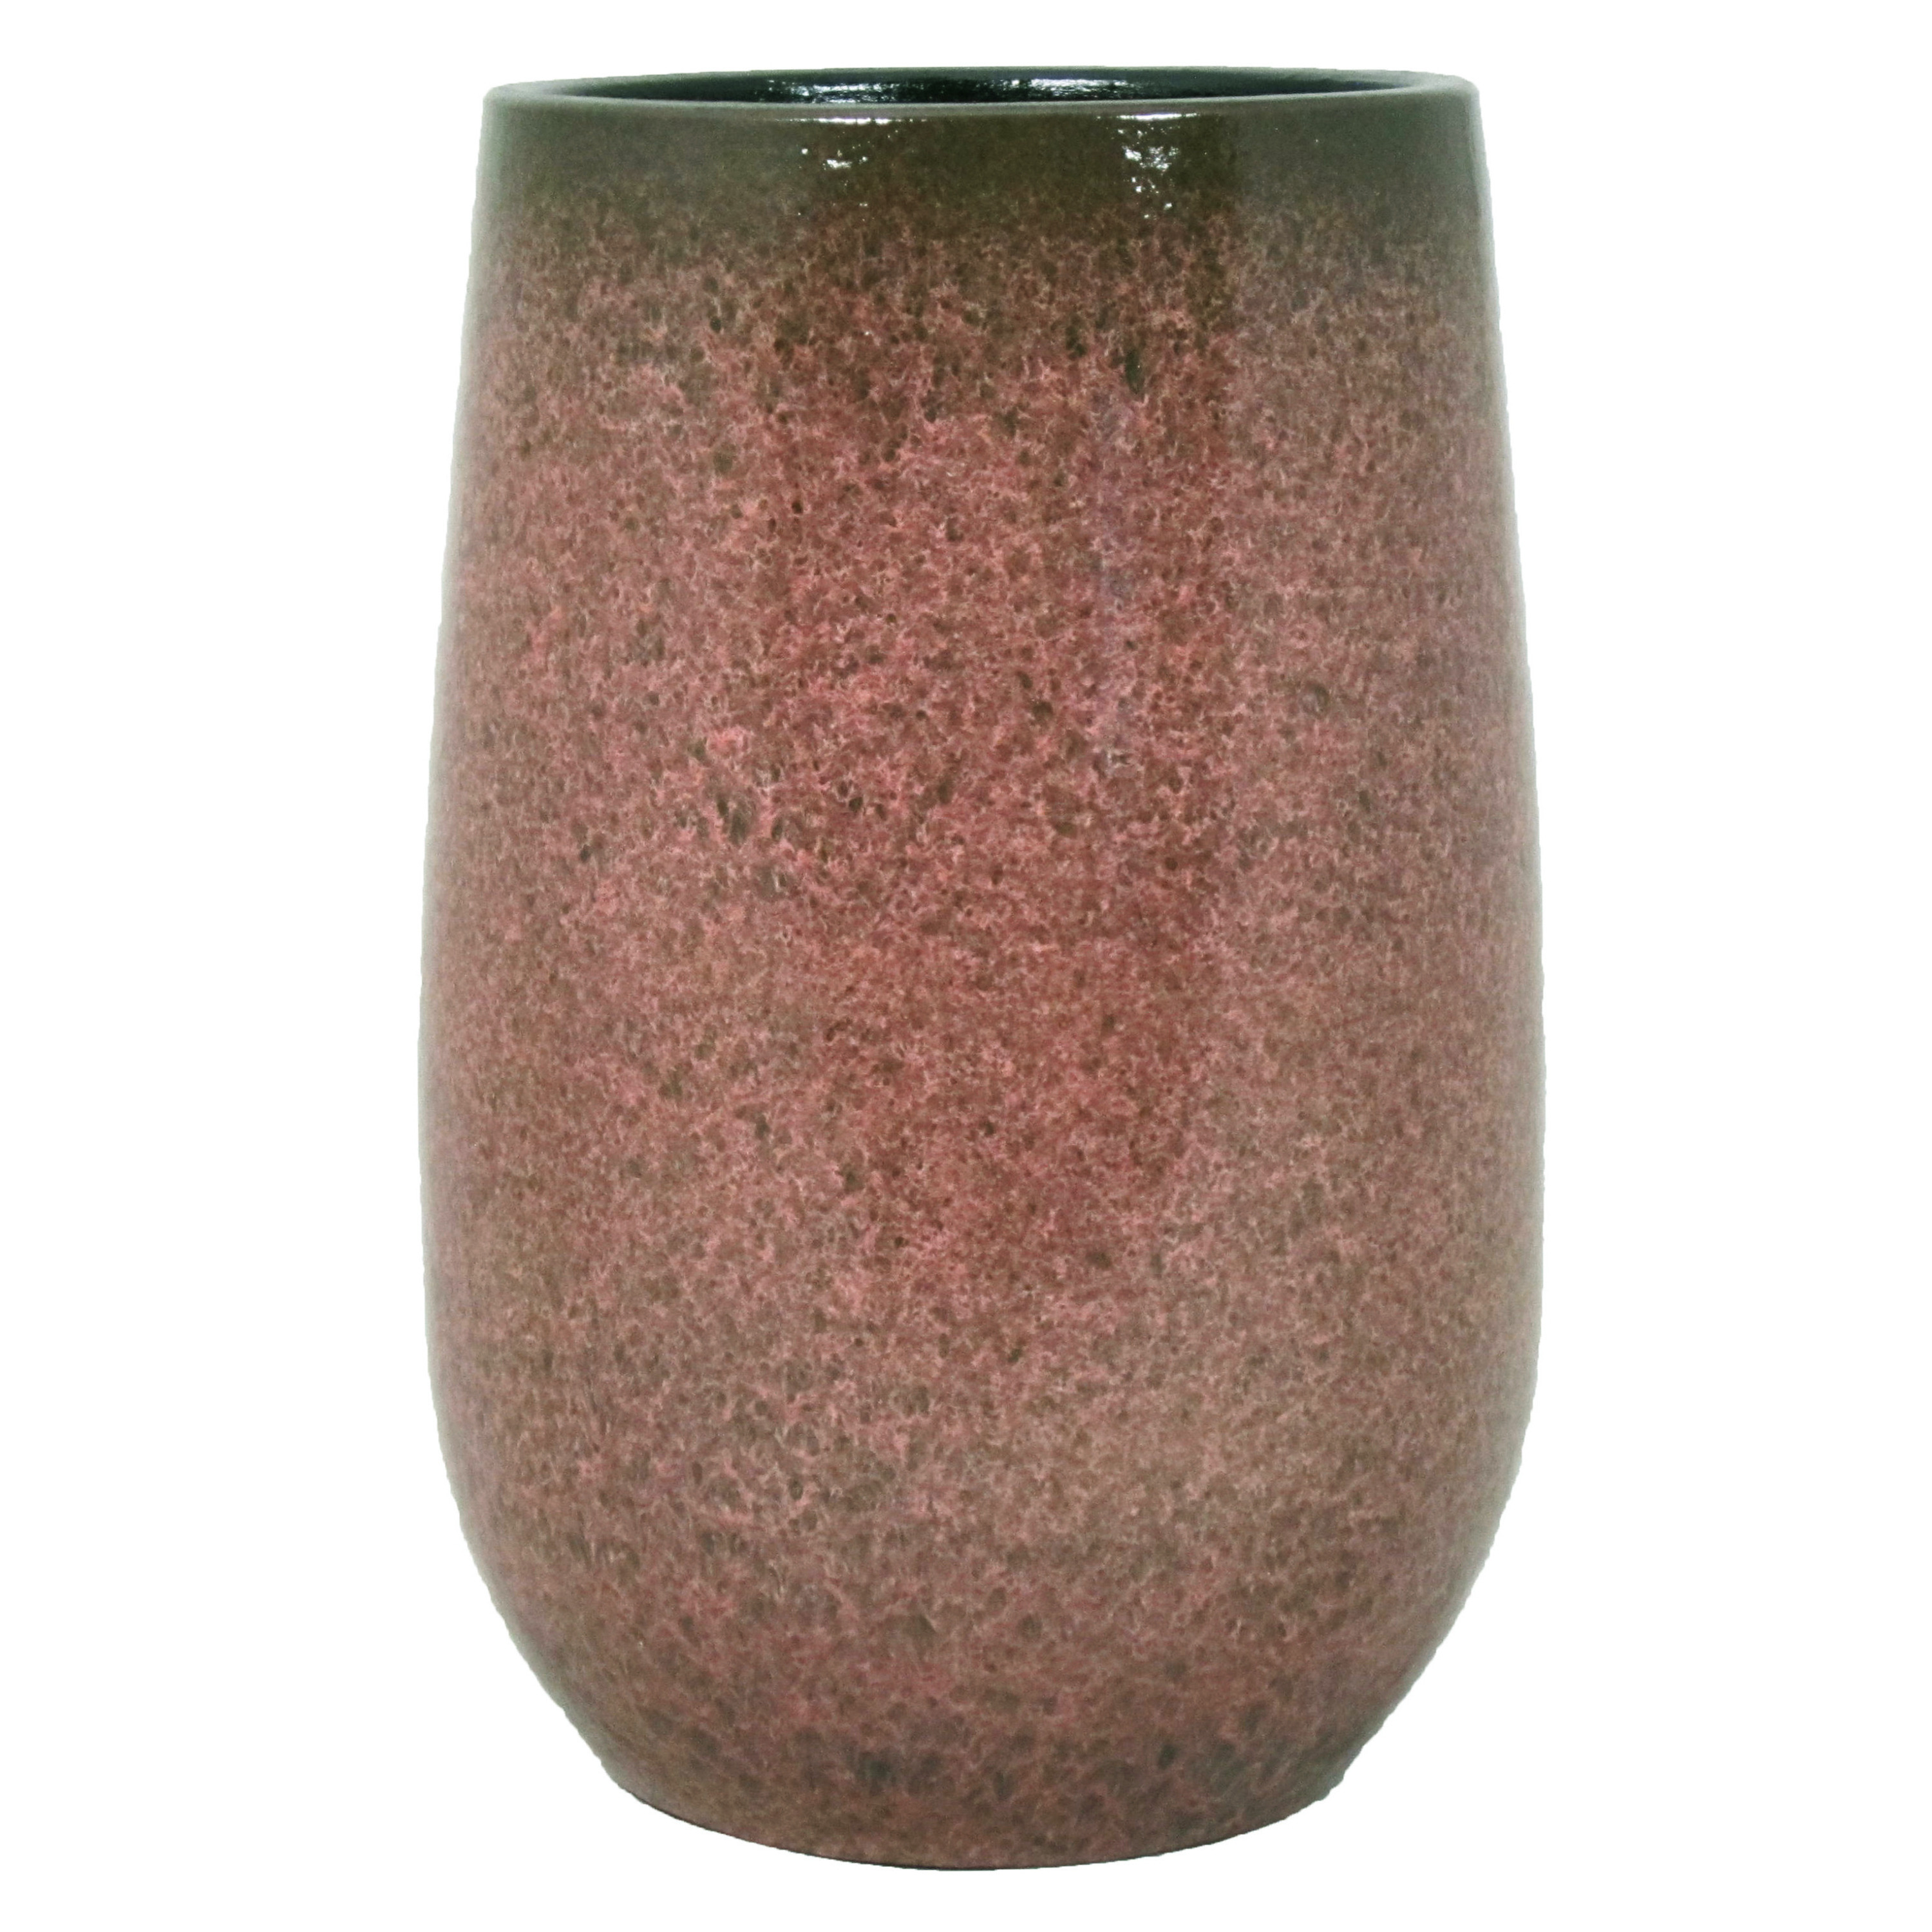 Bloempot vaas oud roze flakes keramiek voor bloemen-planten H40 x D22 cm